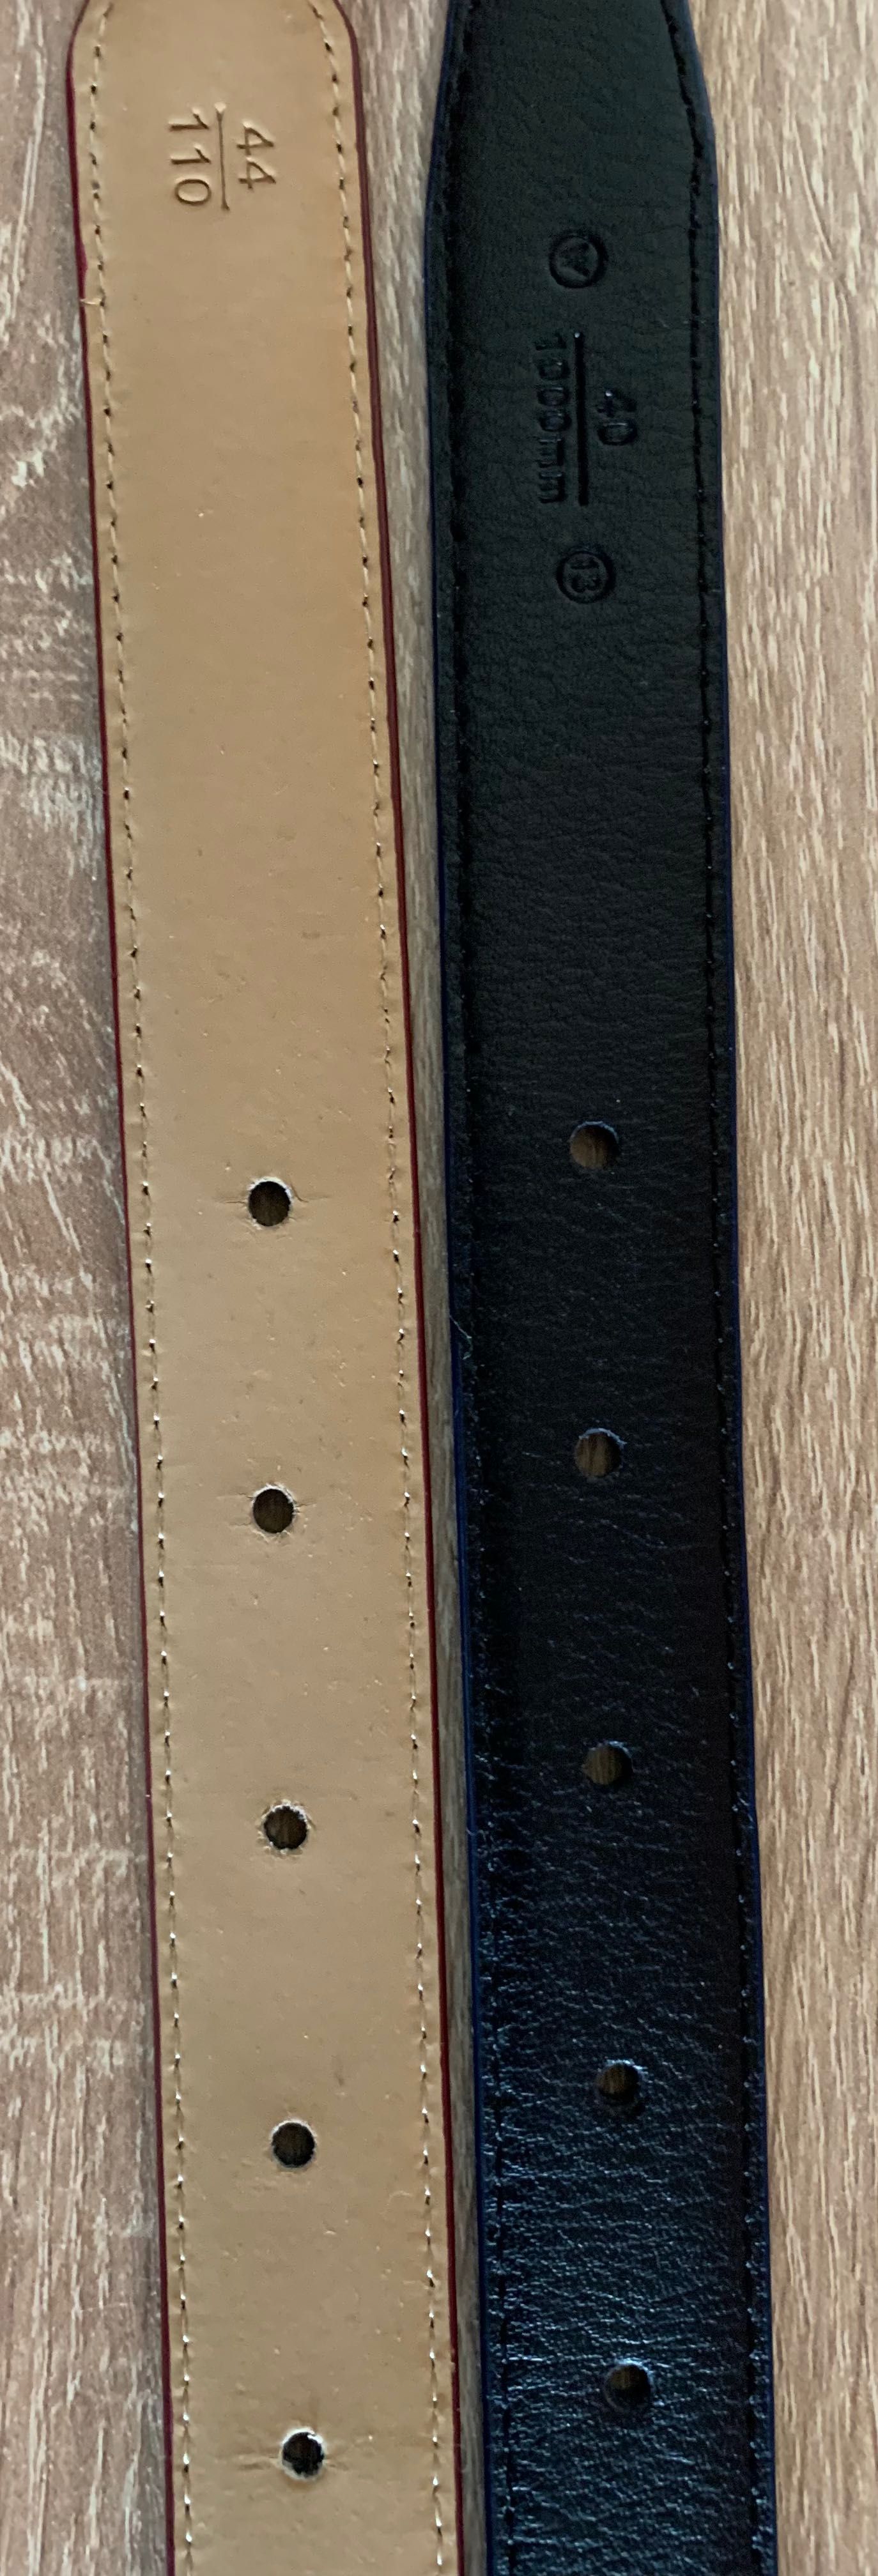 Ремень пояс женский alon dominator кожаный real genuine leather 100%